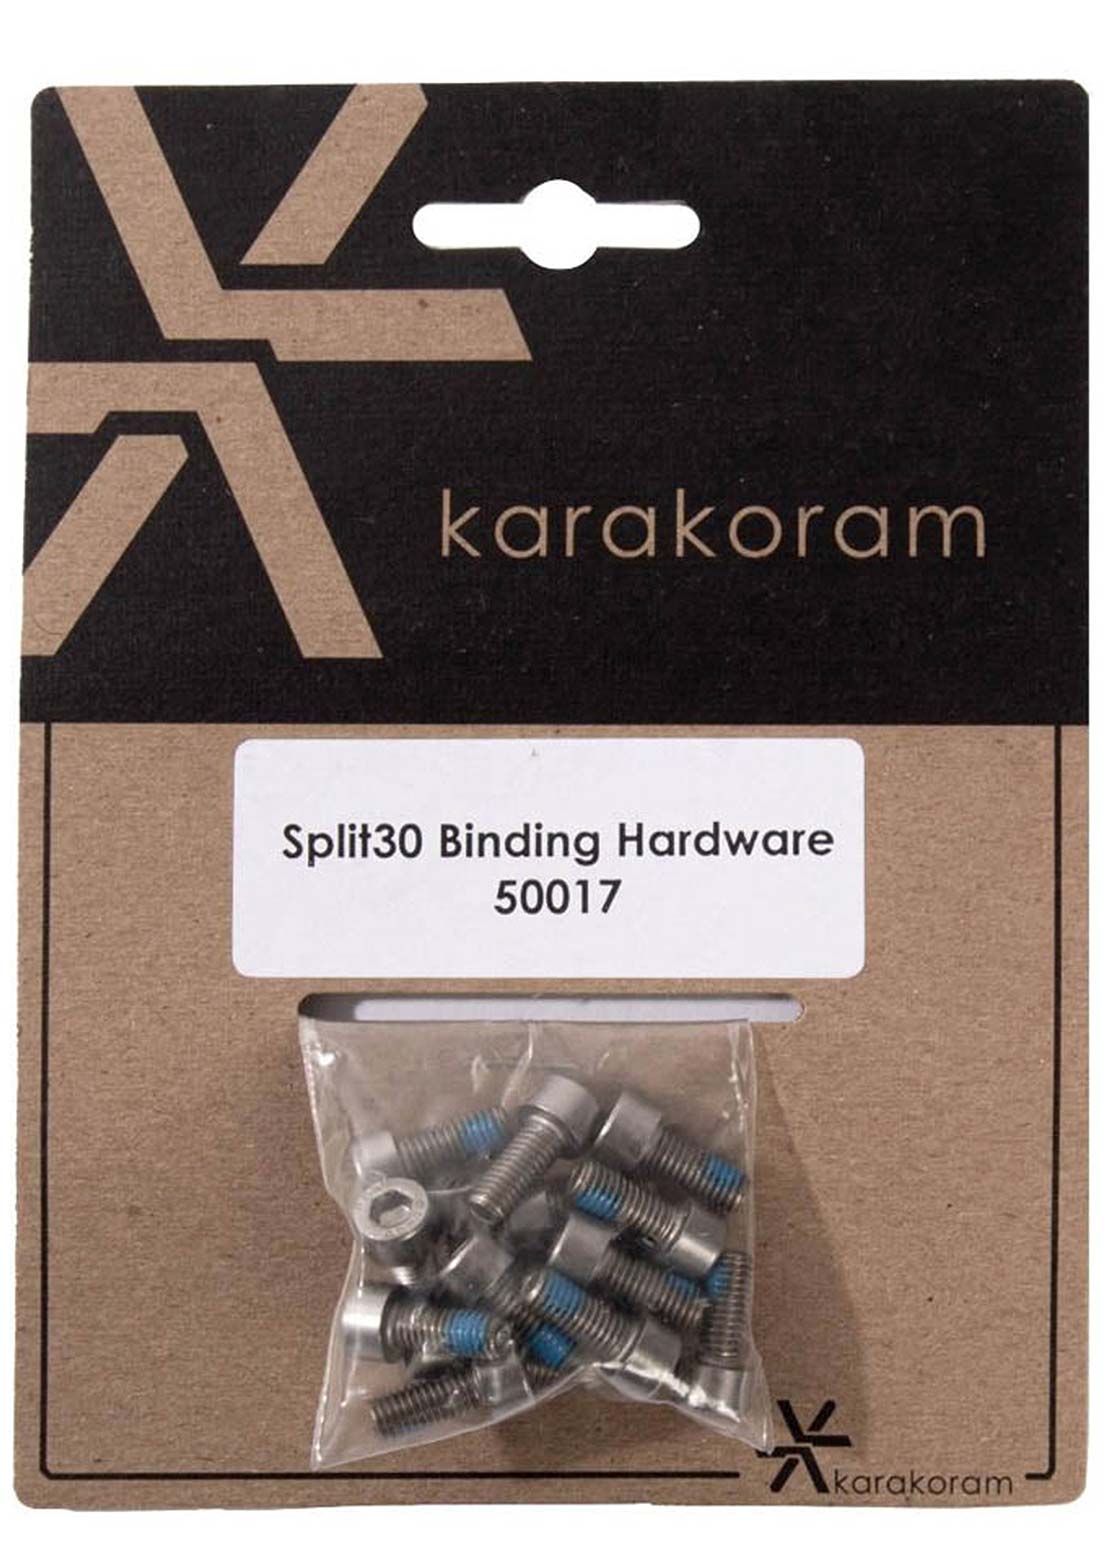 Karakoram Split30 Binding Hardware